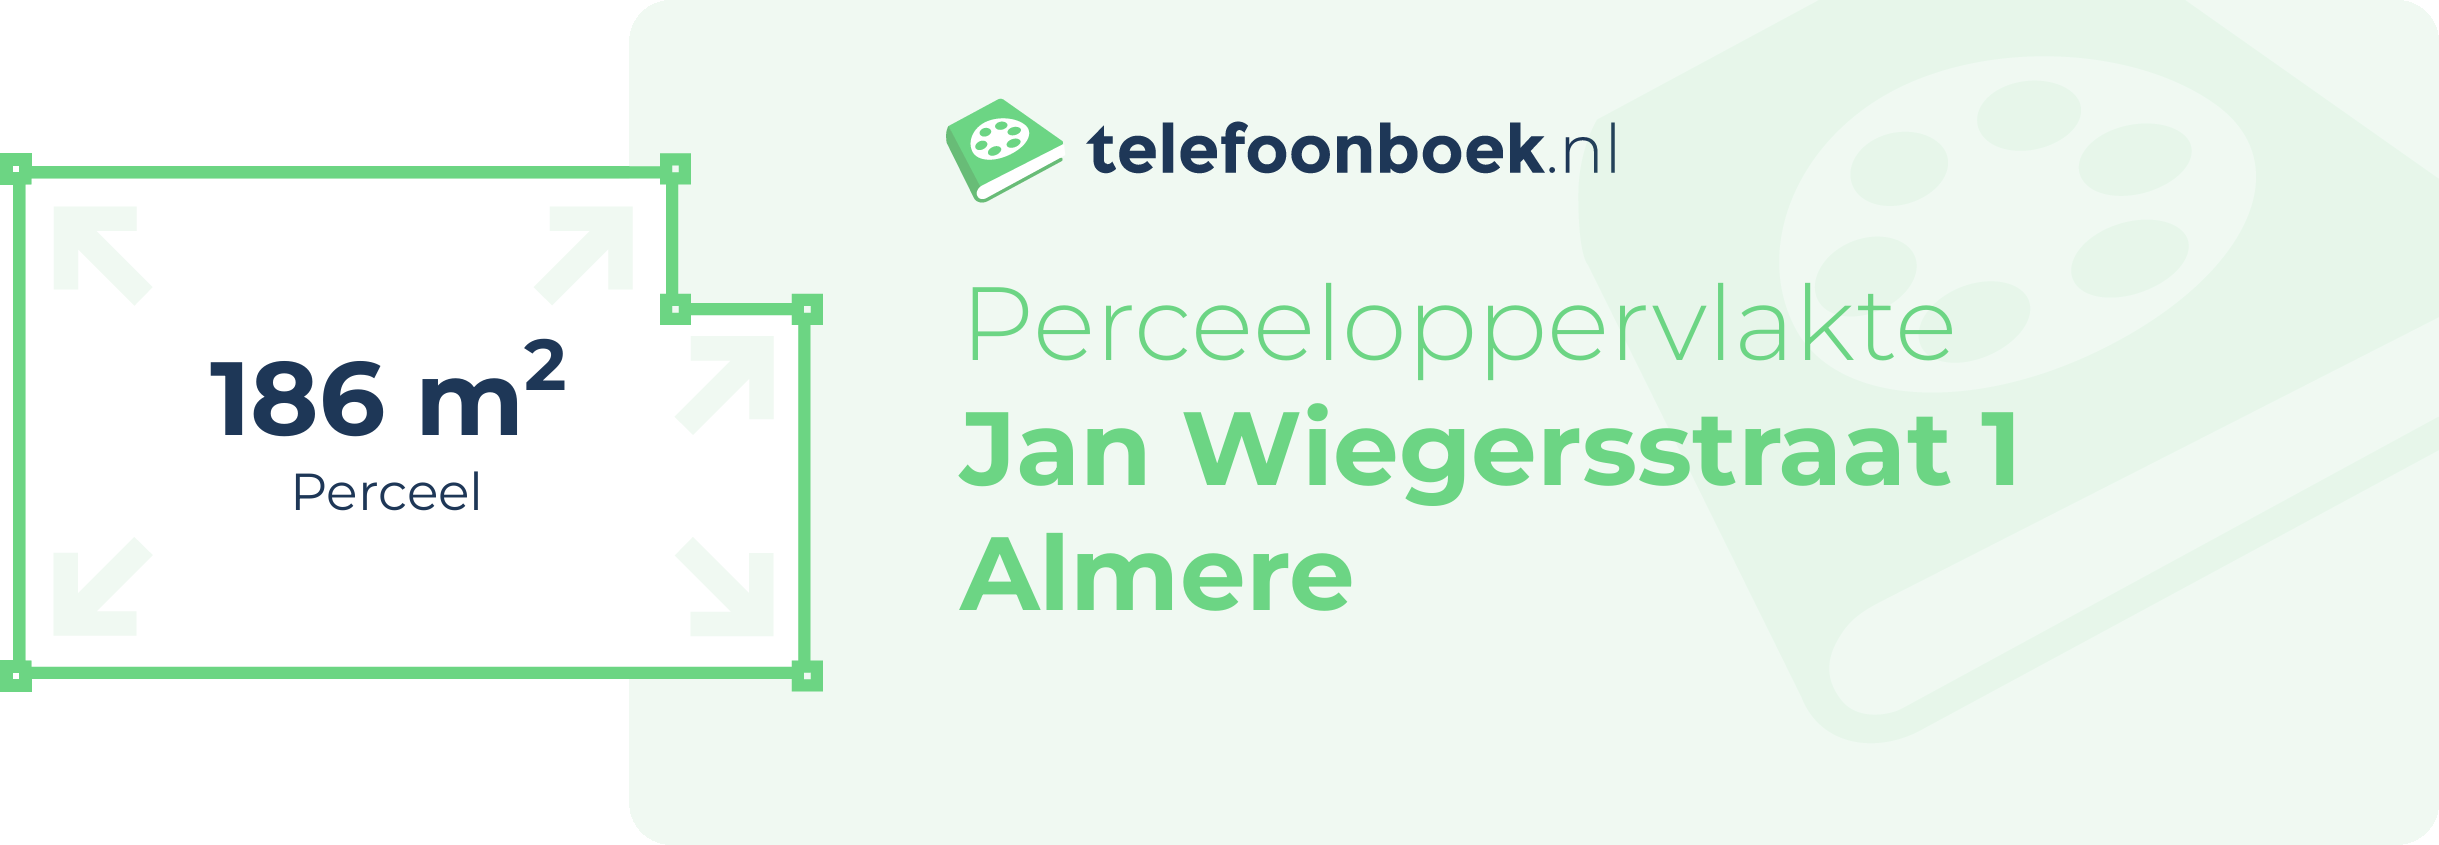 Perceeloppervlakte Jan Wiegersstraat 1 Almere